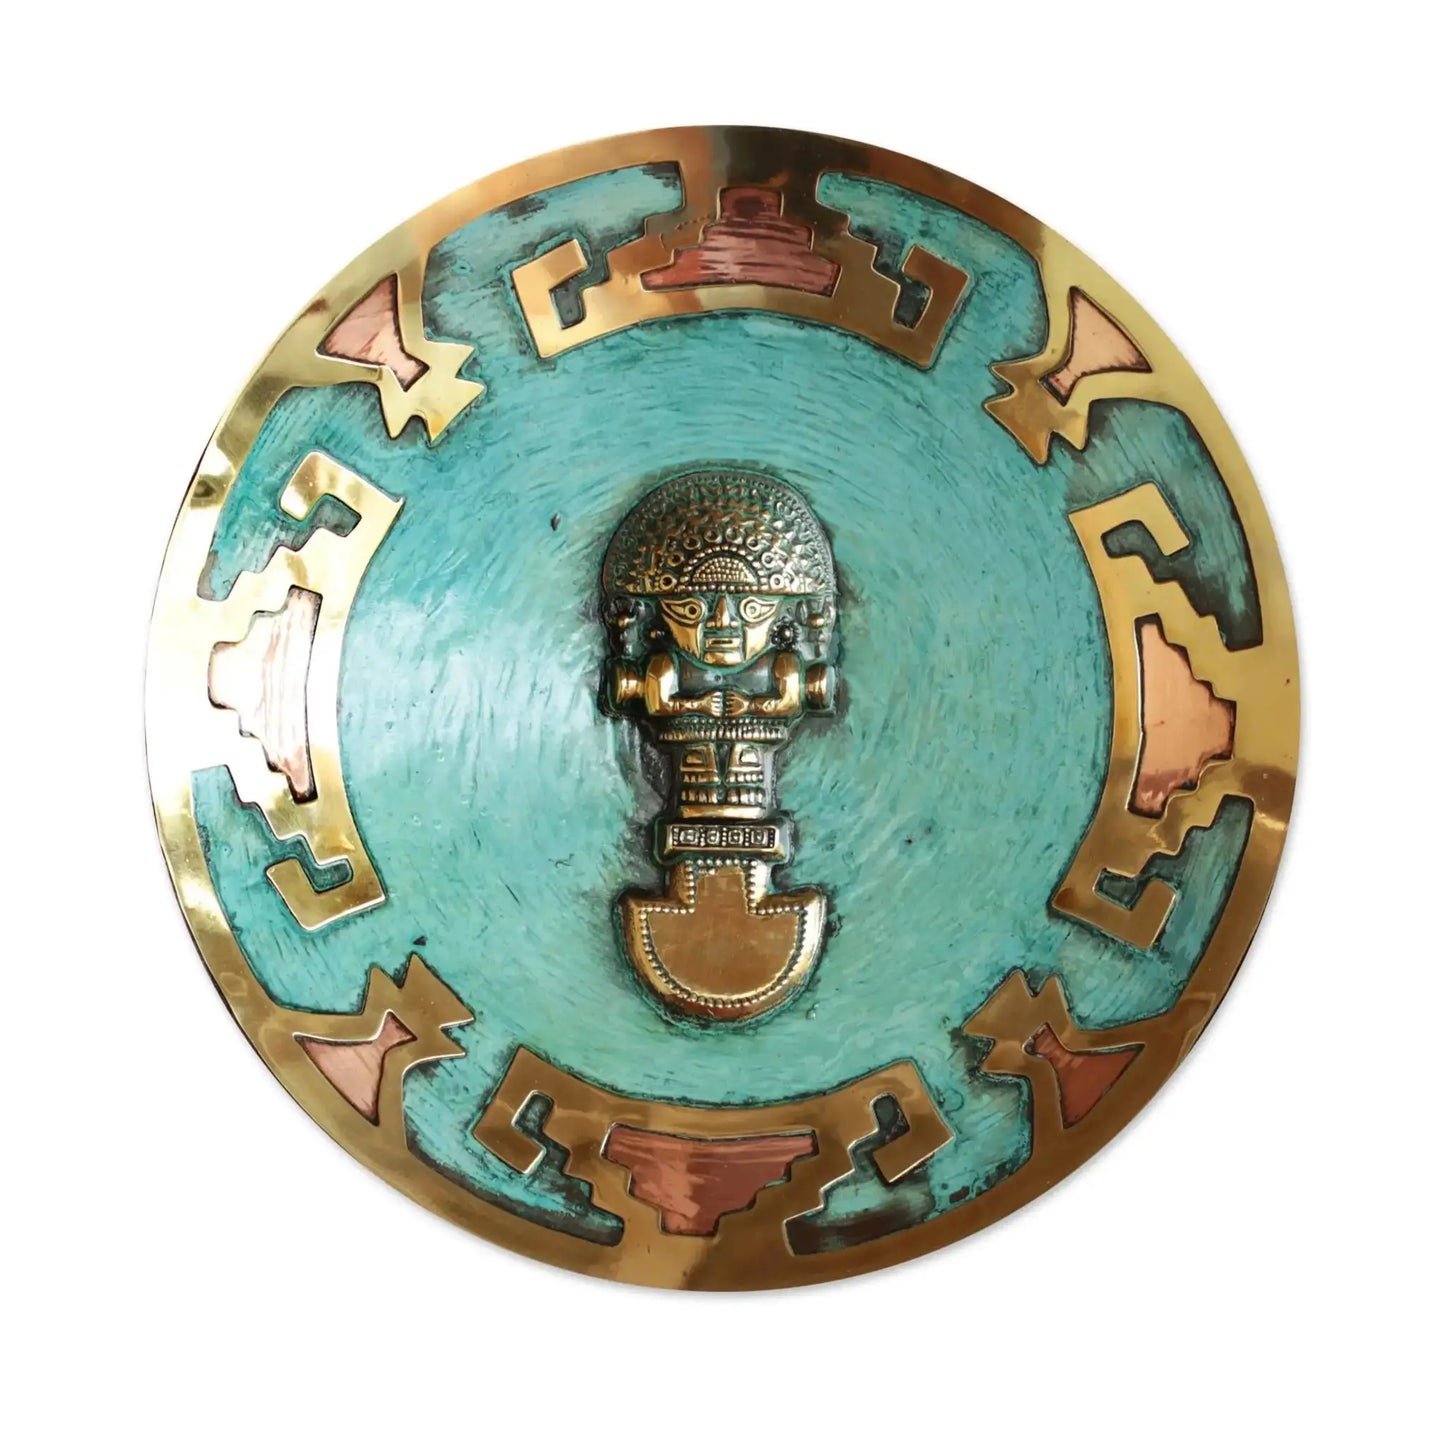 Ceremonial Tumi - Copper and bronze plate - Art